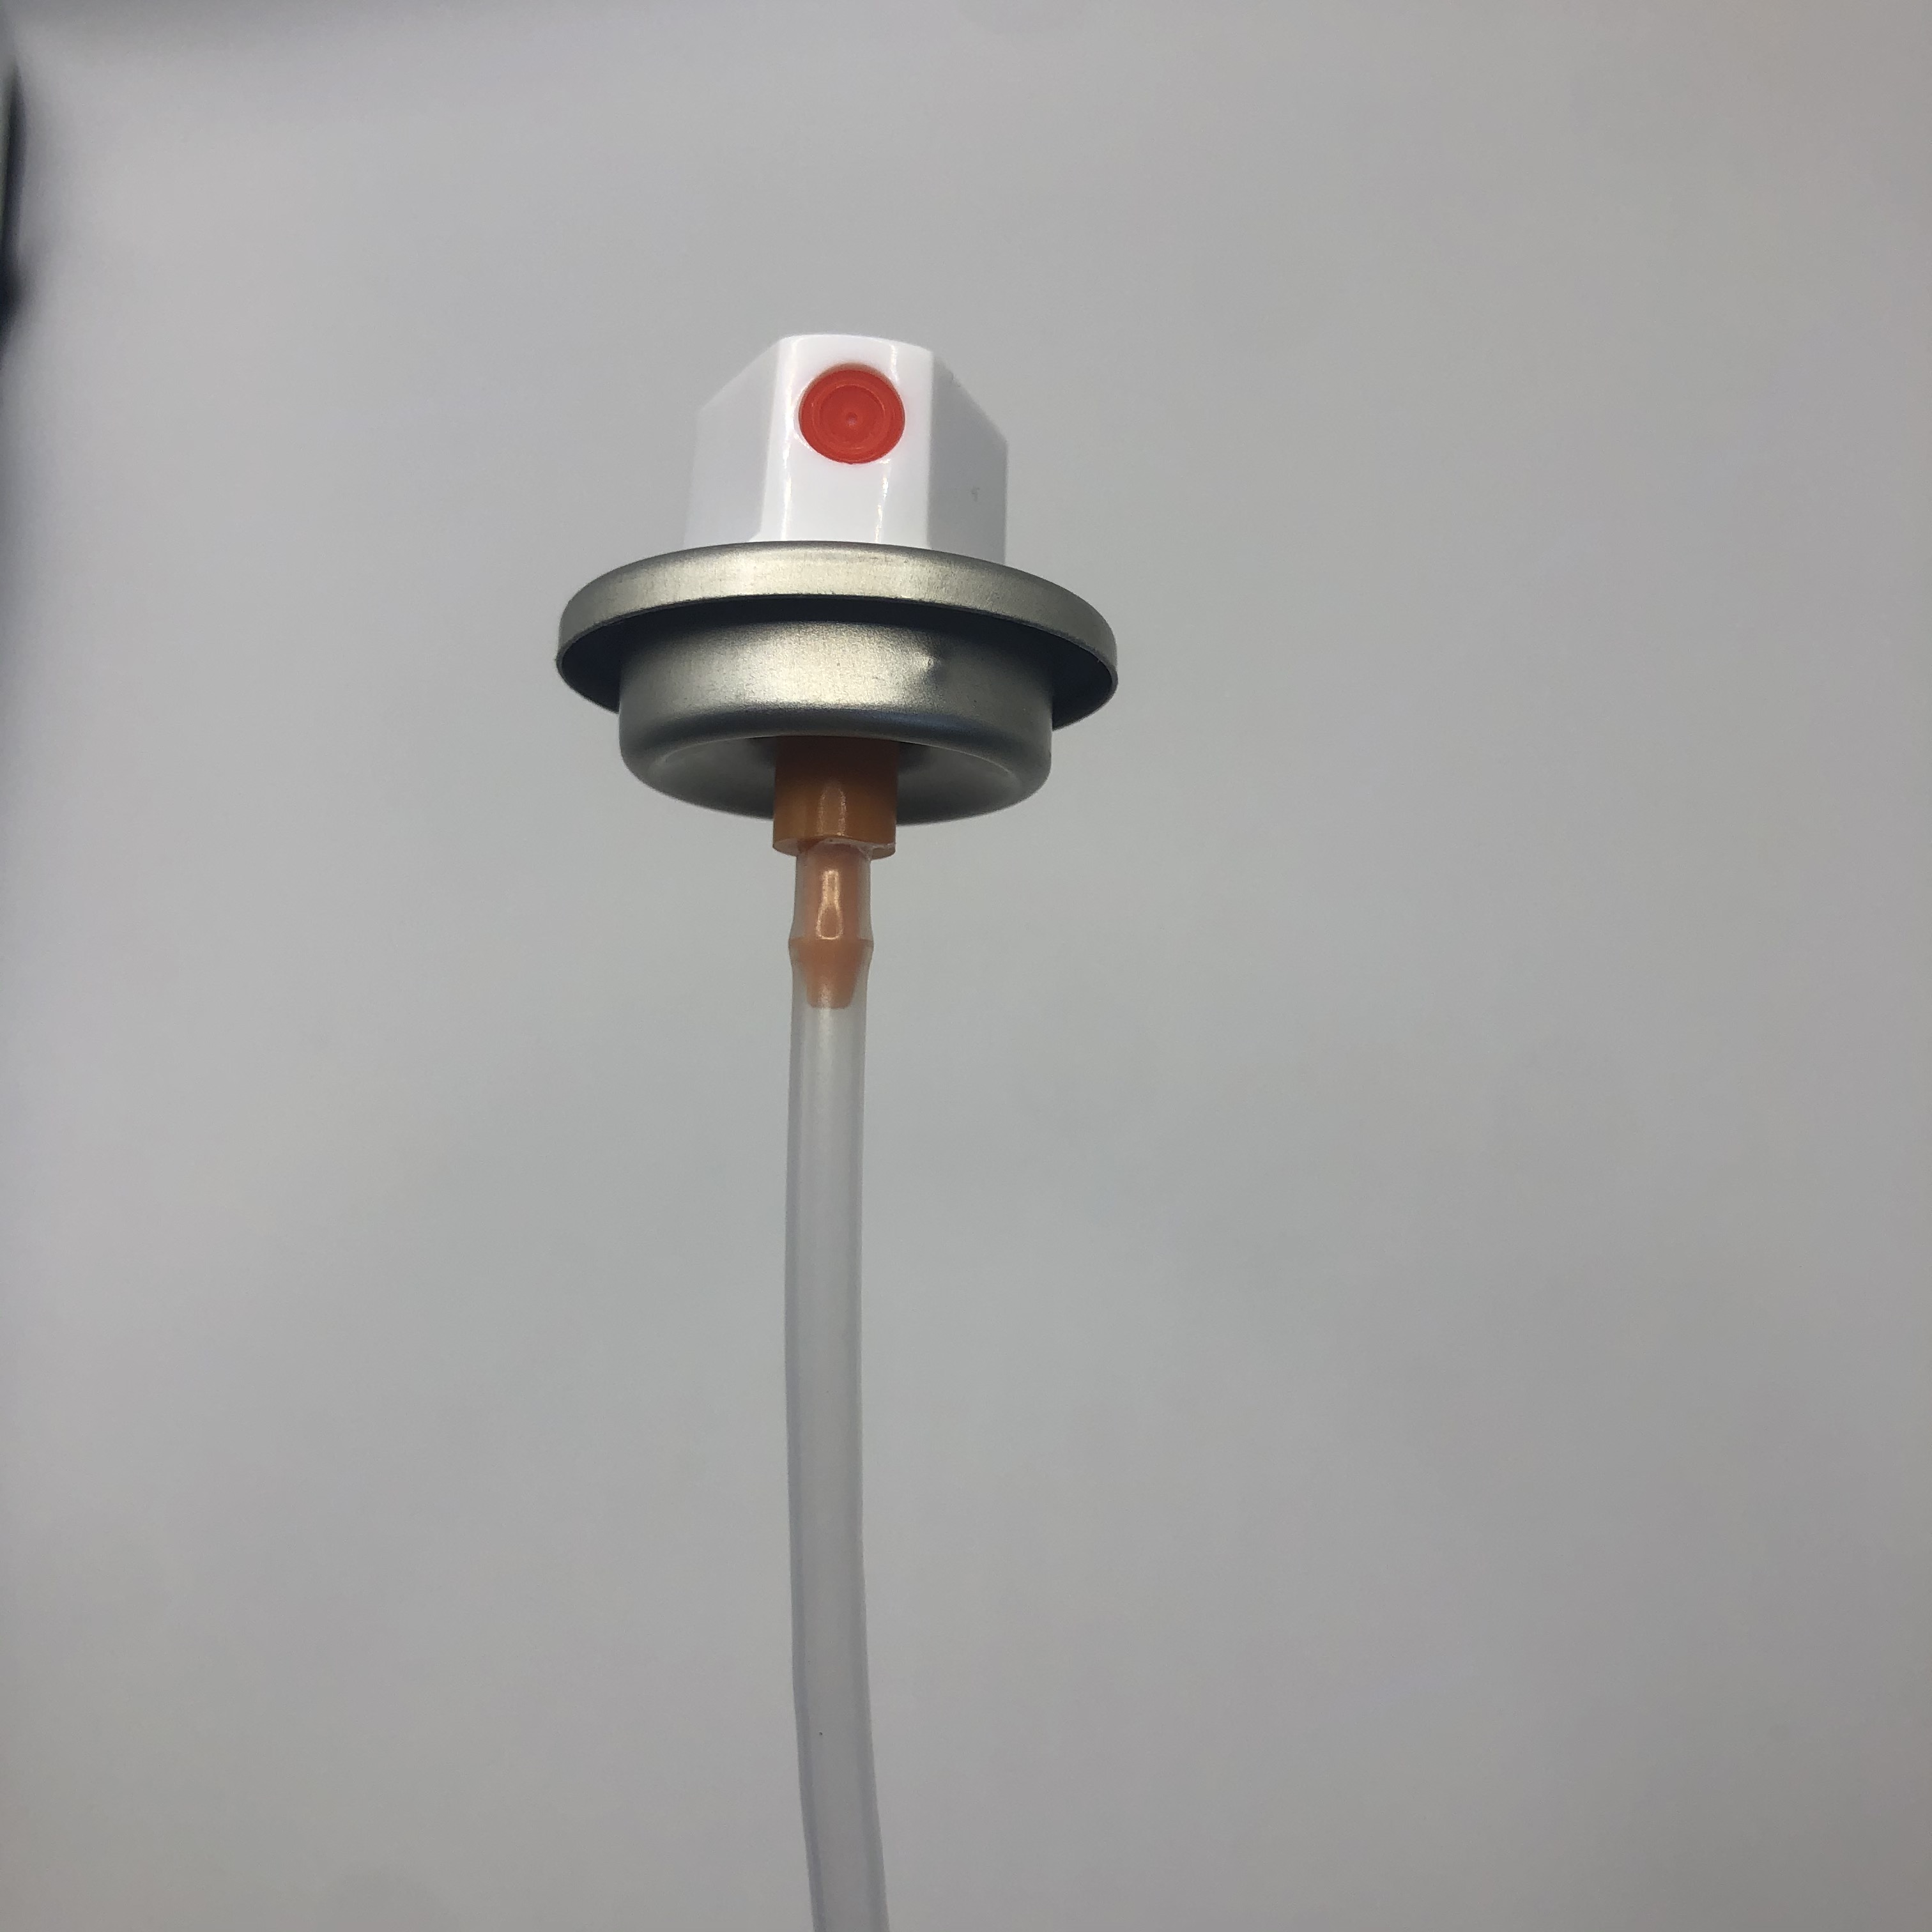 Válvula de pulverización de pintura eléctrica con presión ajustable y control de velocidad variable eficiente y que ahorra tiempo